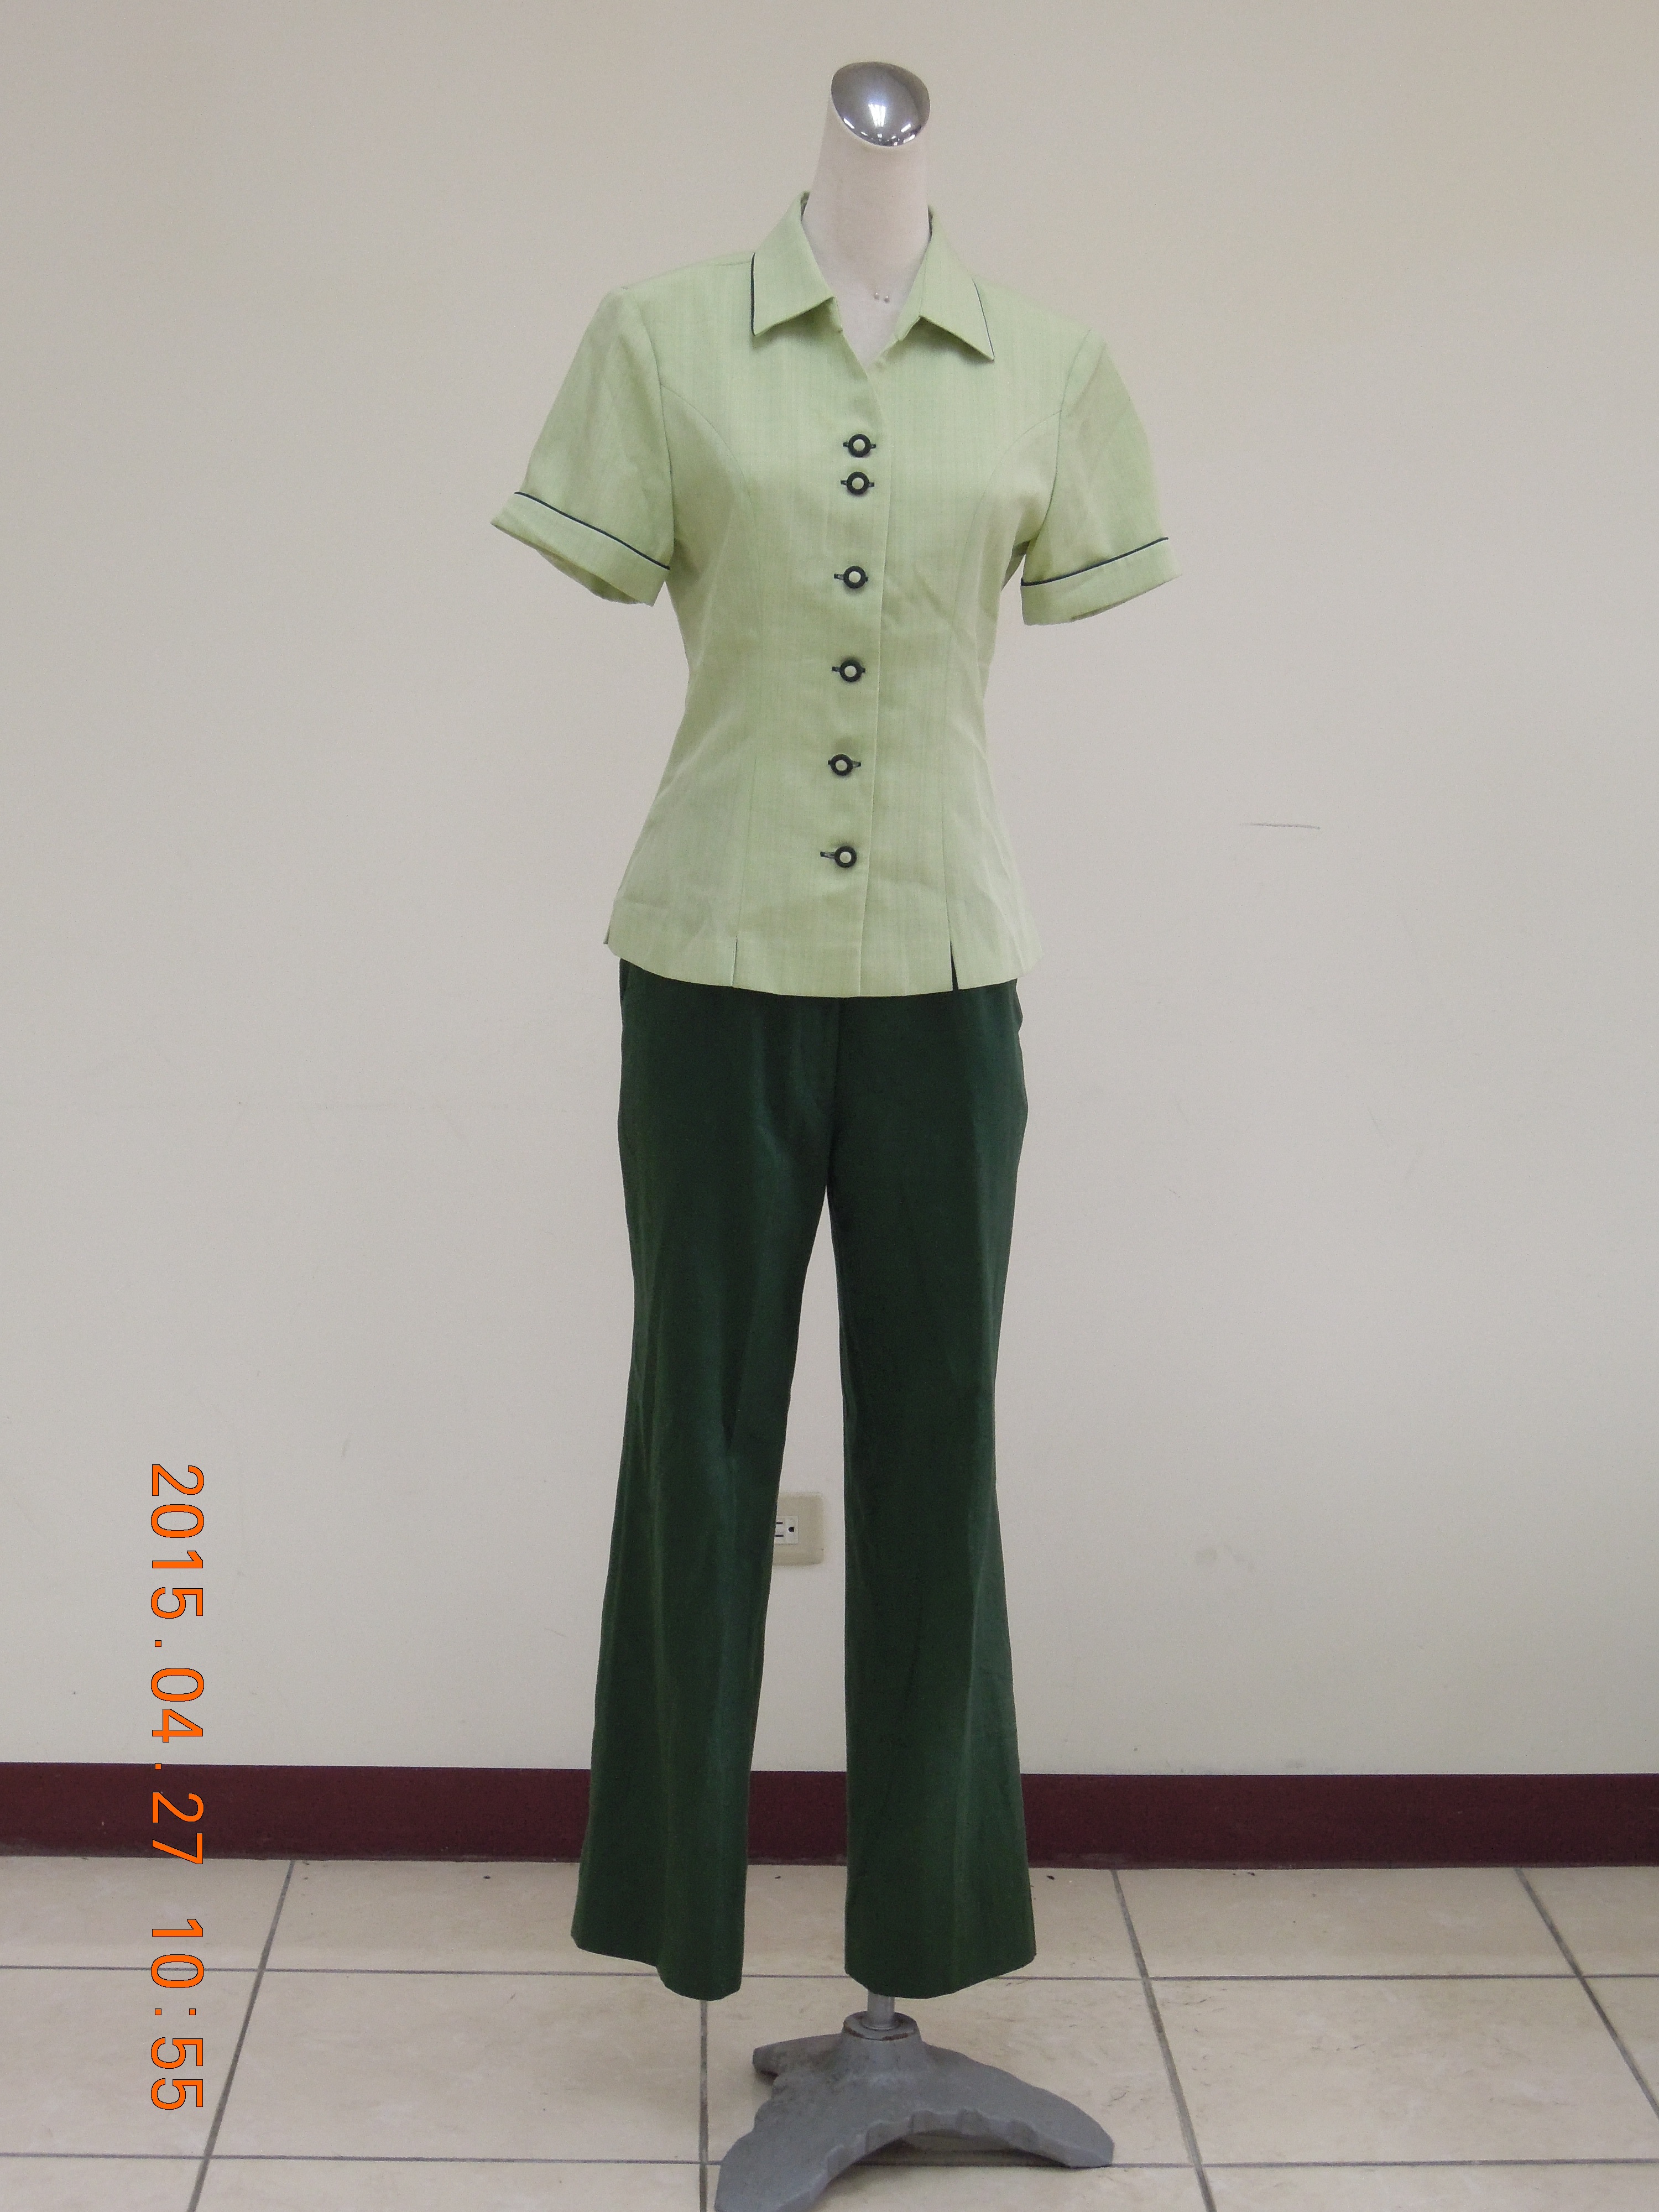 收費員制服之90至99年代夏季綠色褲裝